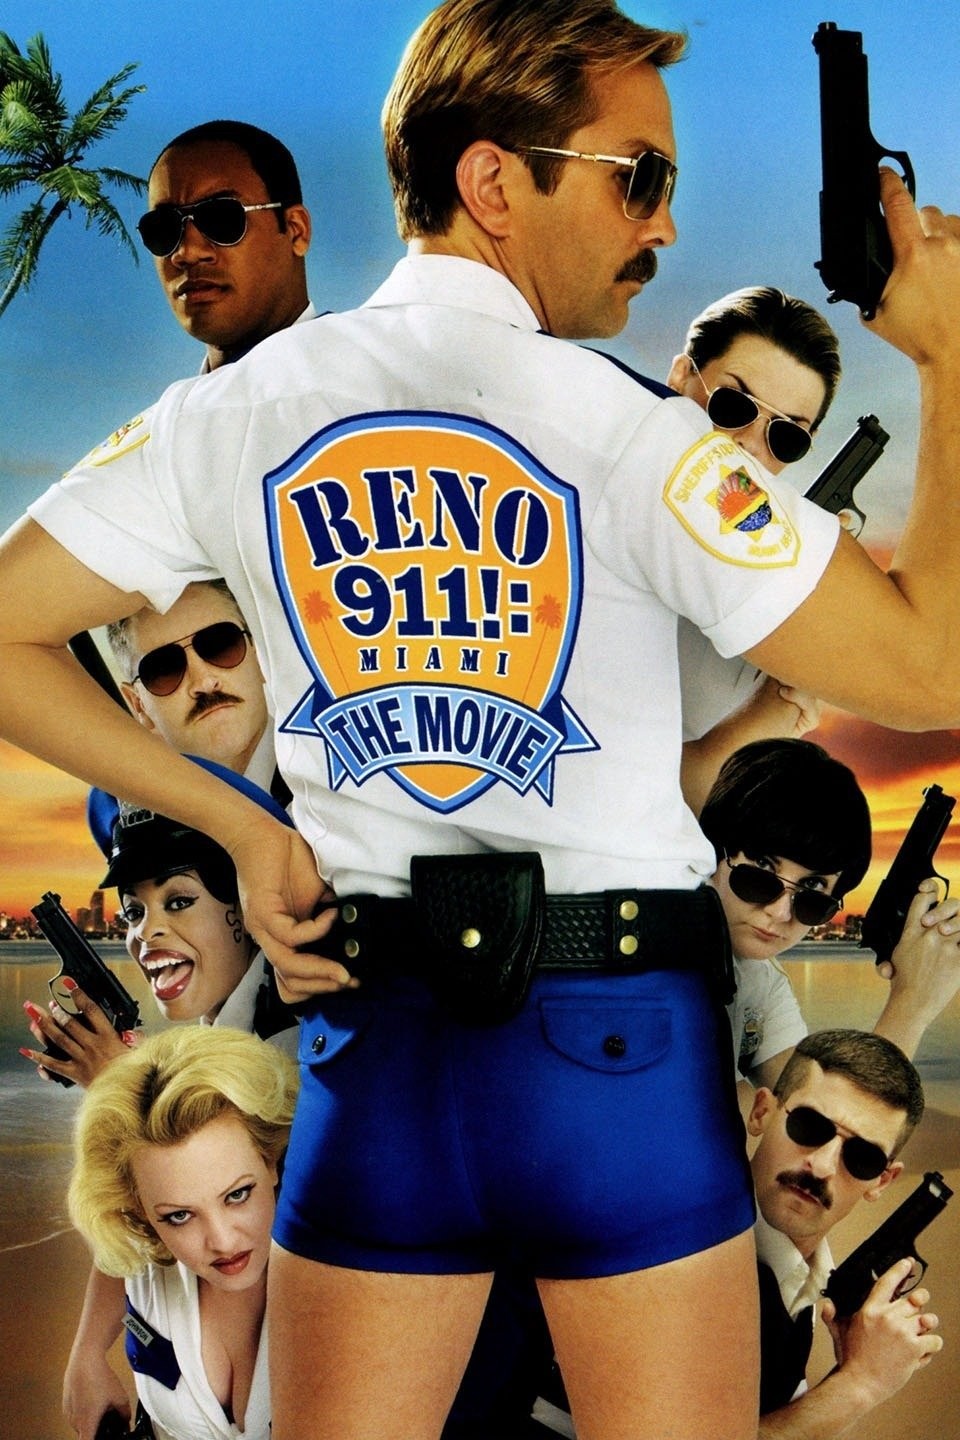 Reno 911!: Miami (2007) Trailer #1